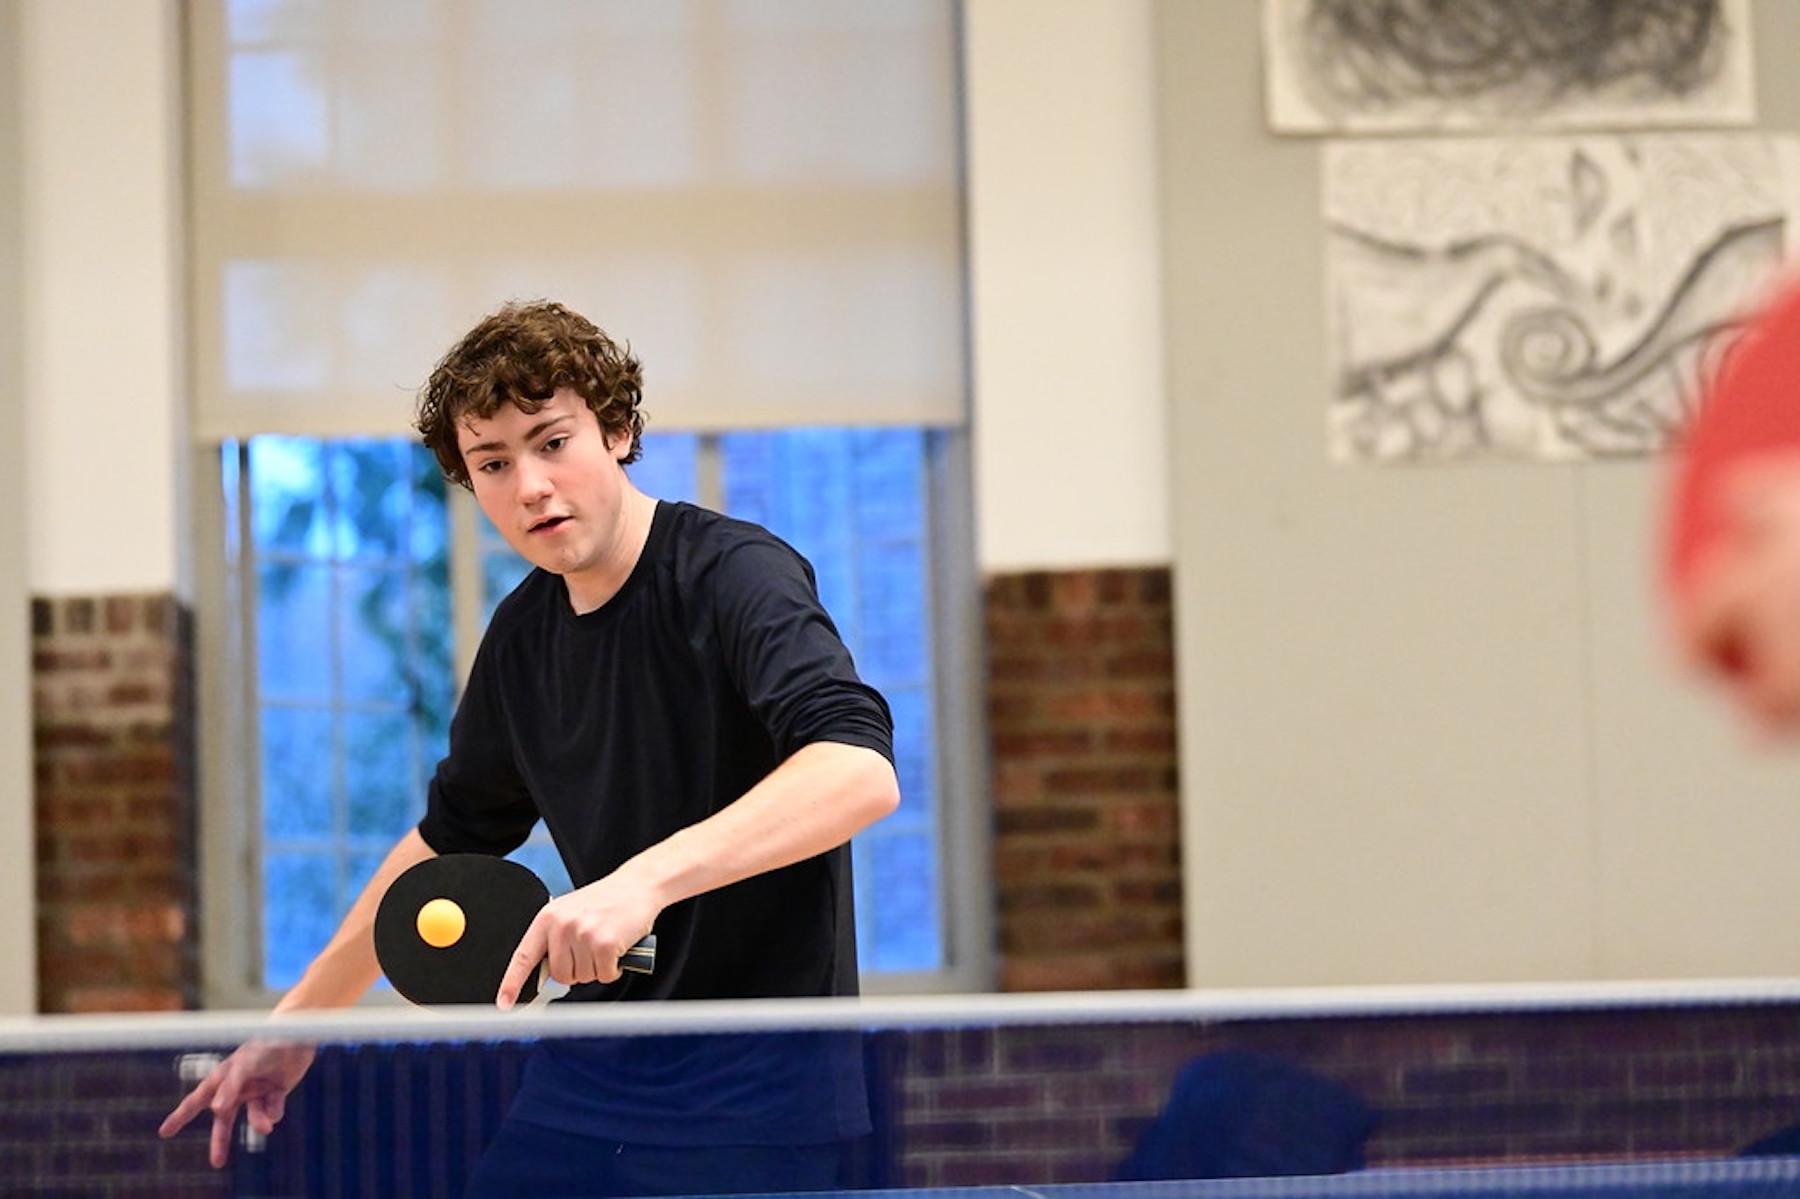 菲尔德斯顿高年级学生在学生场地练习乒乓球.